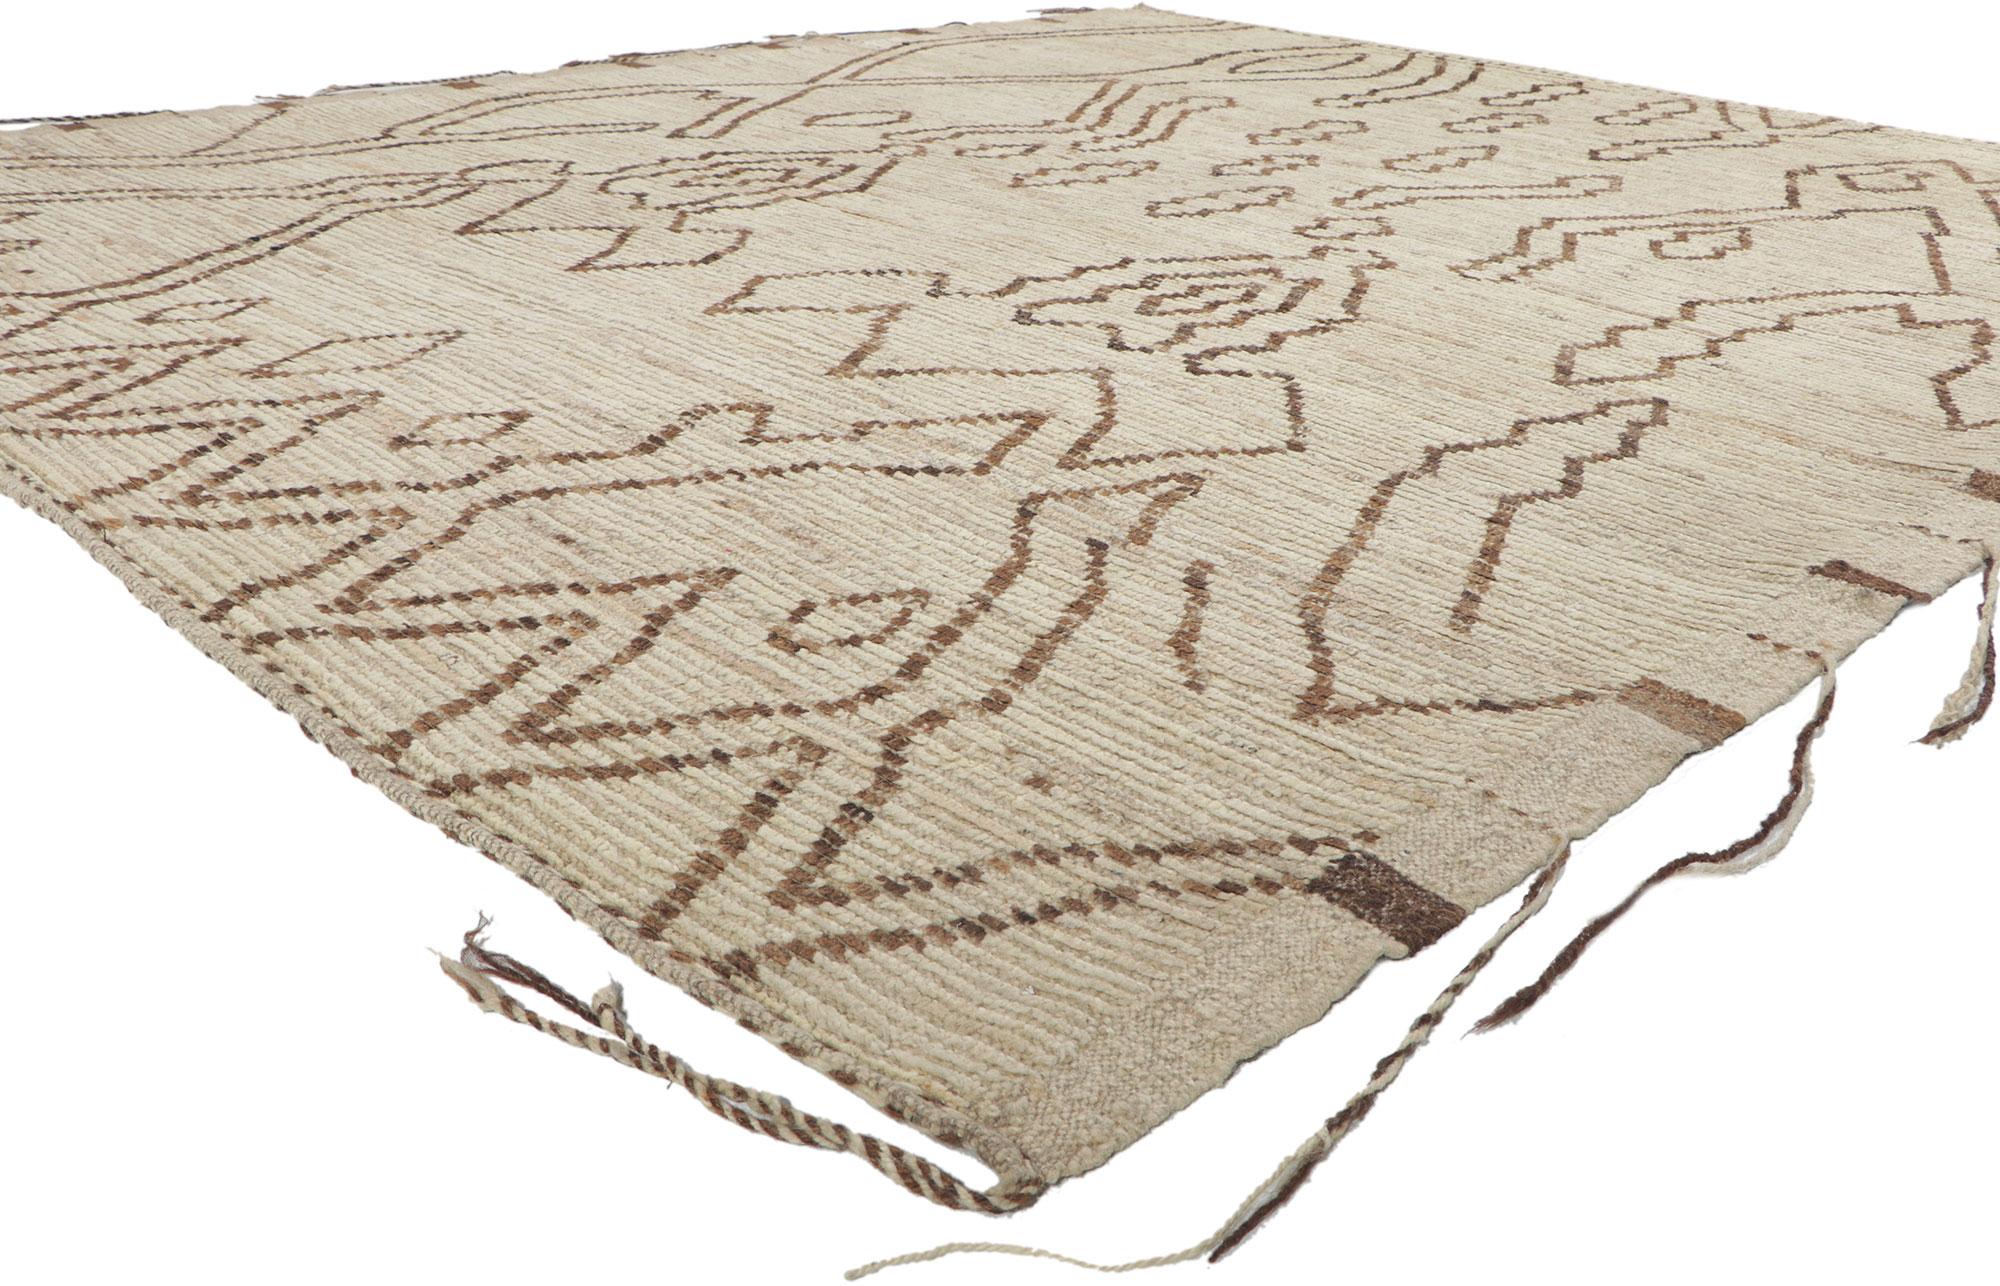 80797 nouveau Tapis marocain contemporain, 08'06 x 09'10. Avec son design expressif, ses détails et sa texture incroyables, ce tapis de style marocain en laine nouée à la main est une vision captivante de la beauté tissée. Le motif tribal accrocheur